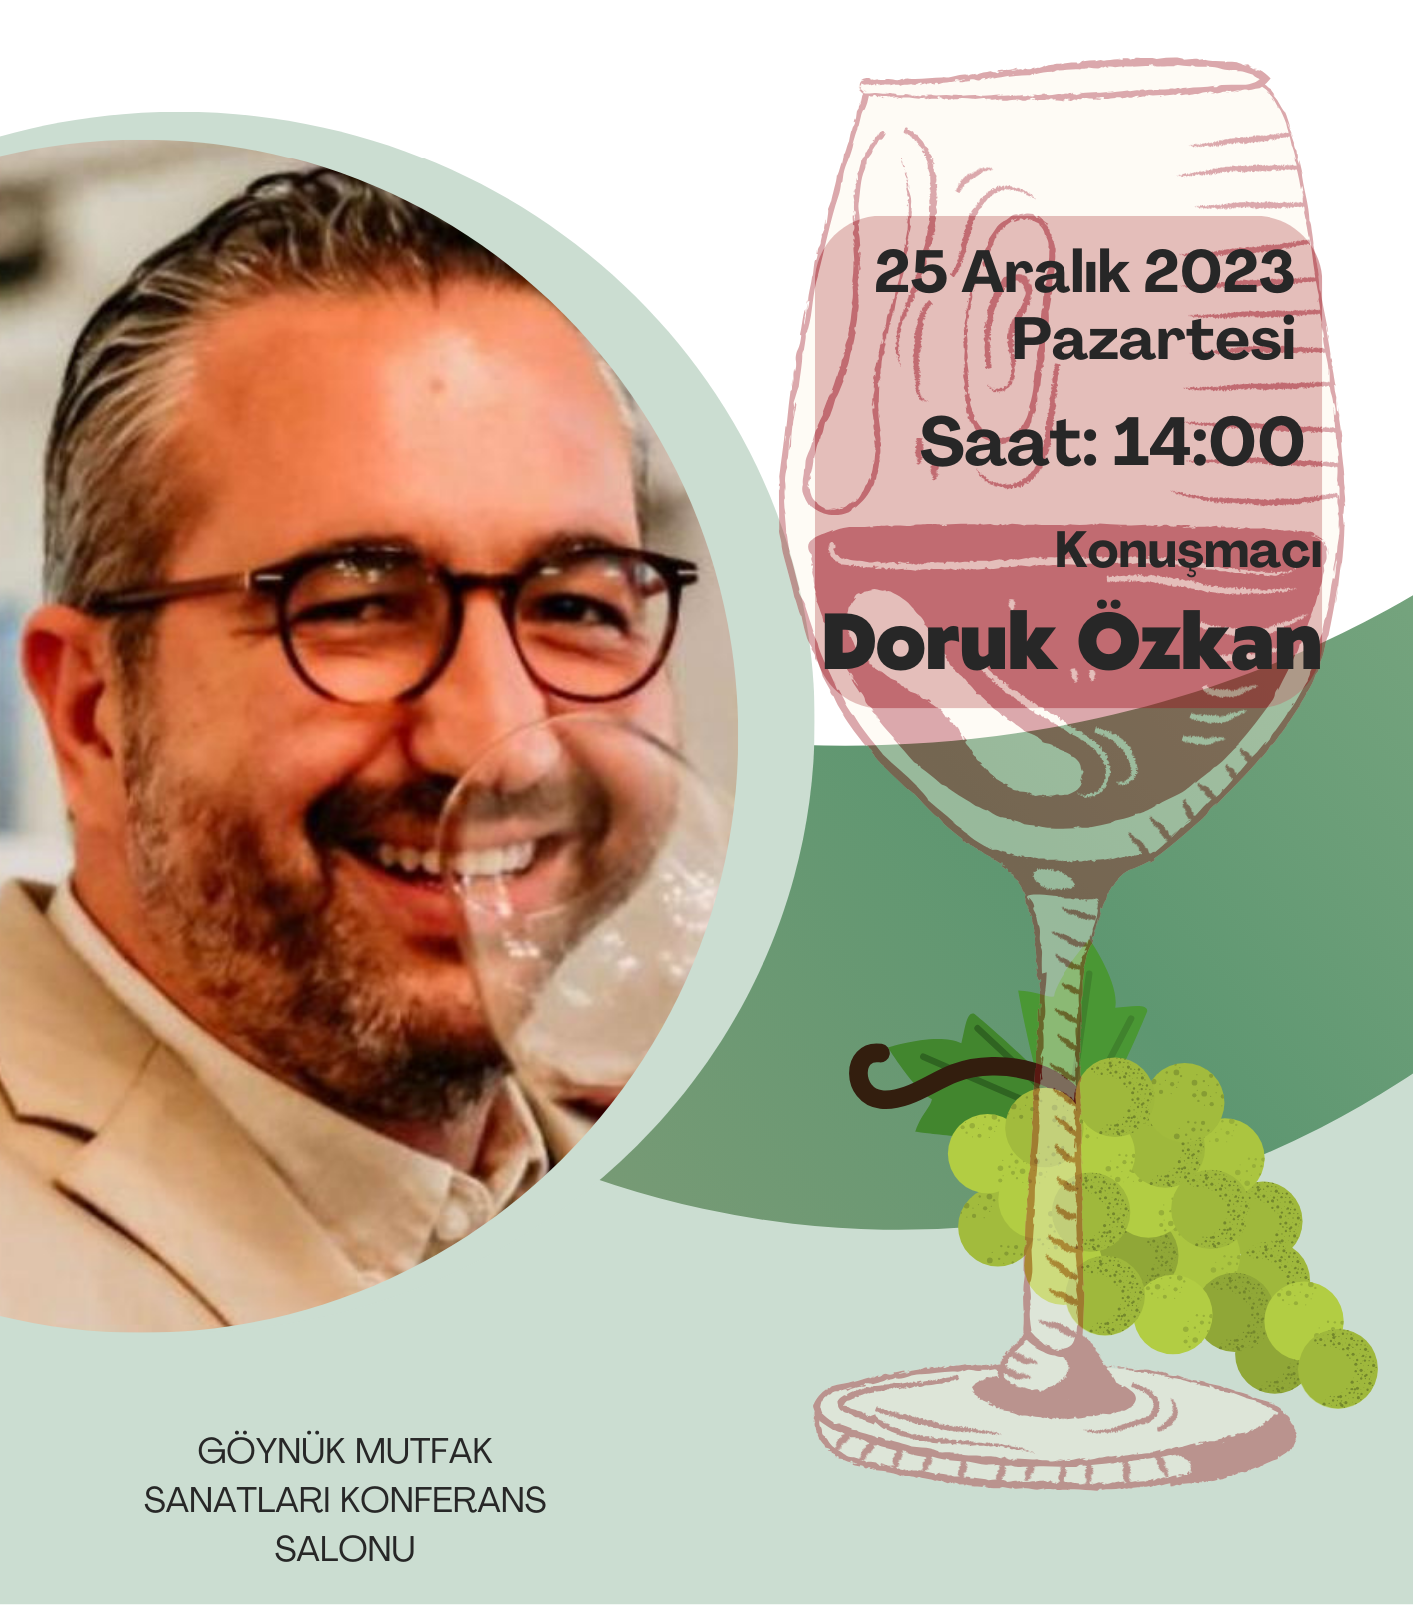 Doruk Özkan'la Şarap Söyleşileri